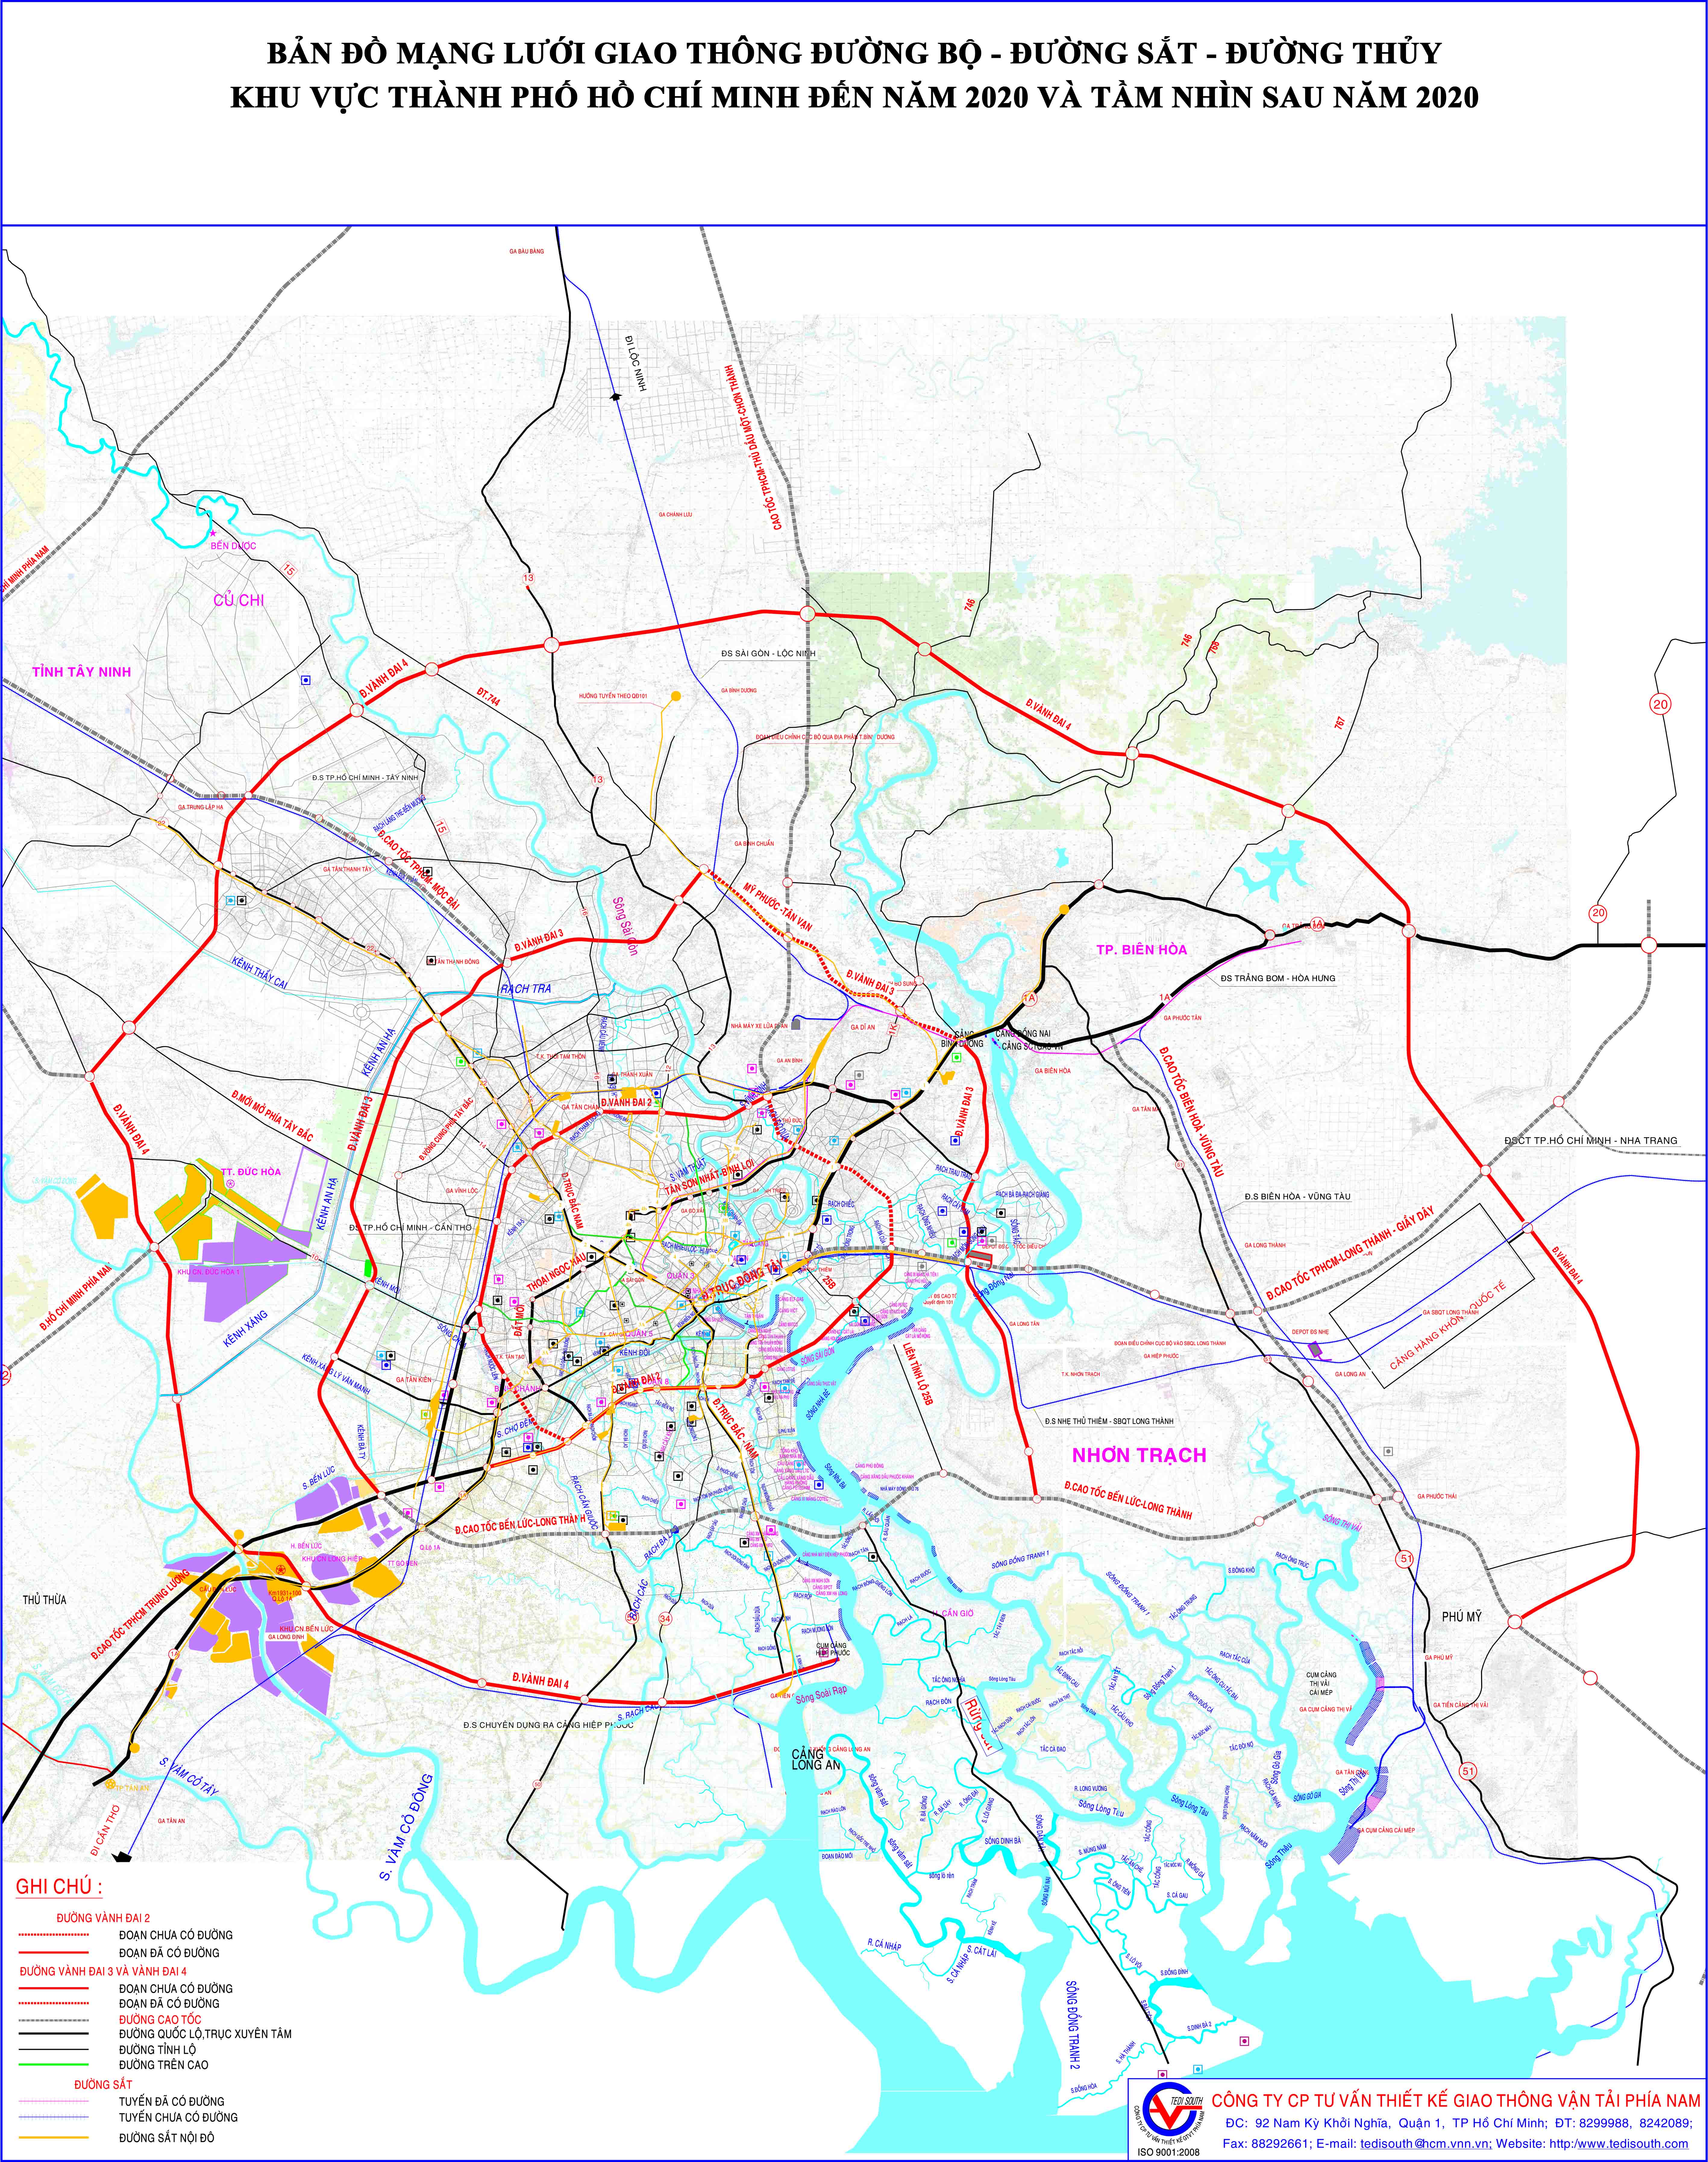 Bản đồ mạng lưới giai thông đường bộ - đường sắt - đường thuỷ khu vực TPHCM đến năm 2020 và tầm nhìn sau 2020